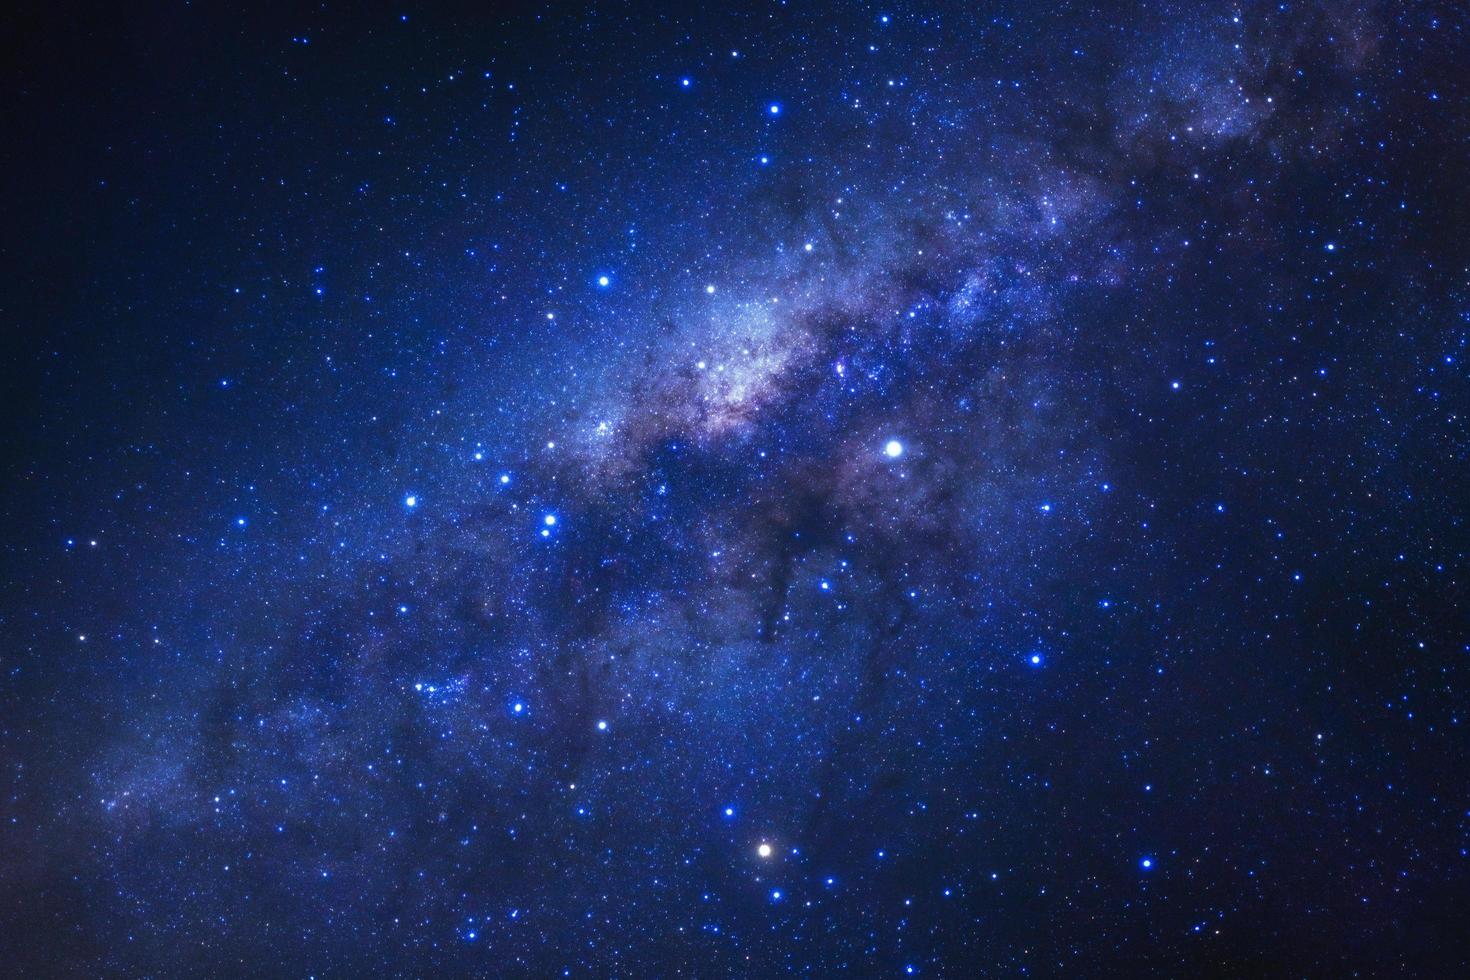 galáxia da via láctea com estrelas e poeira espacial no universo foto